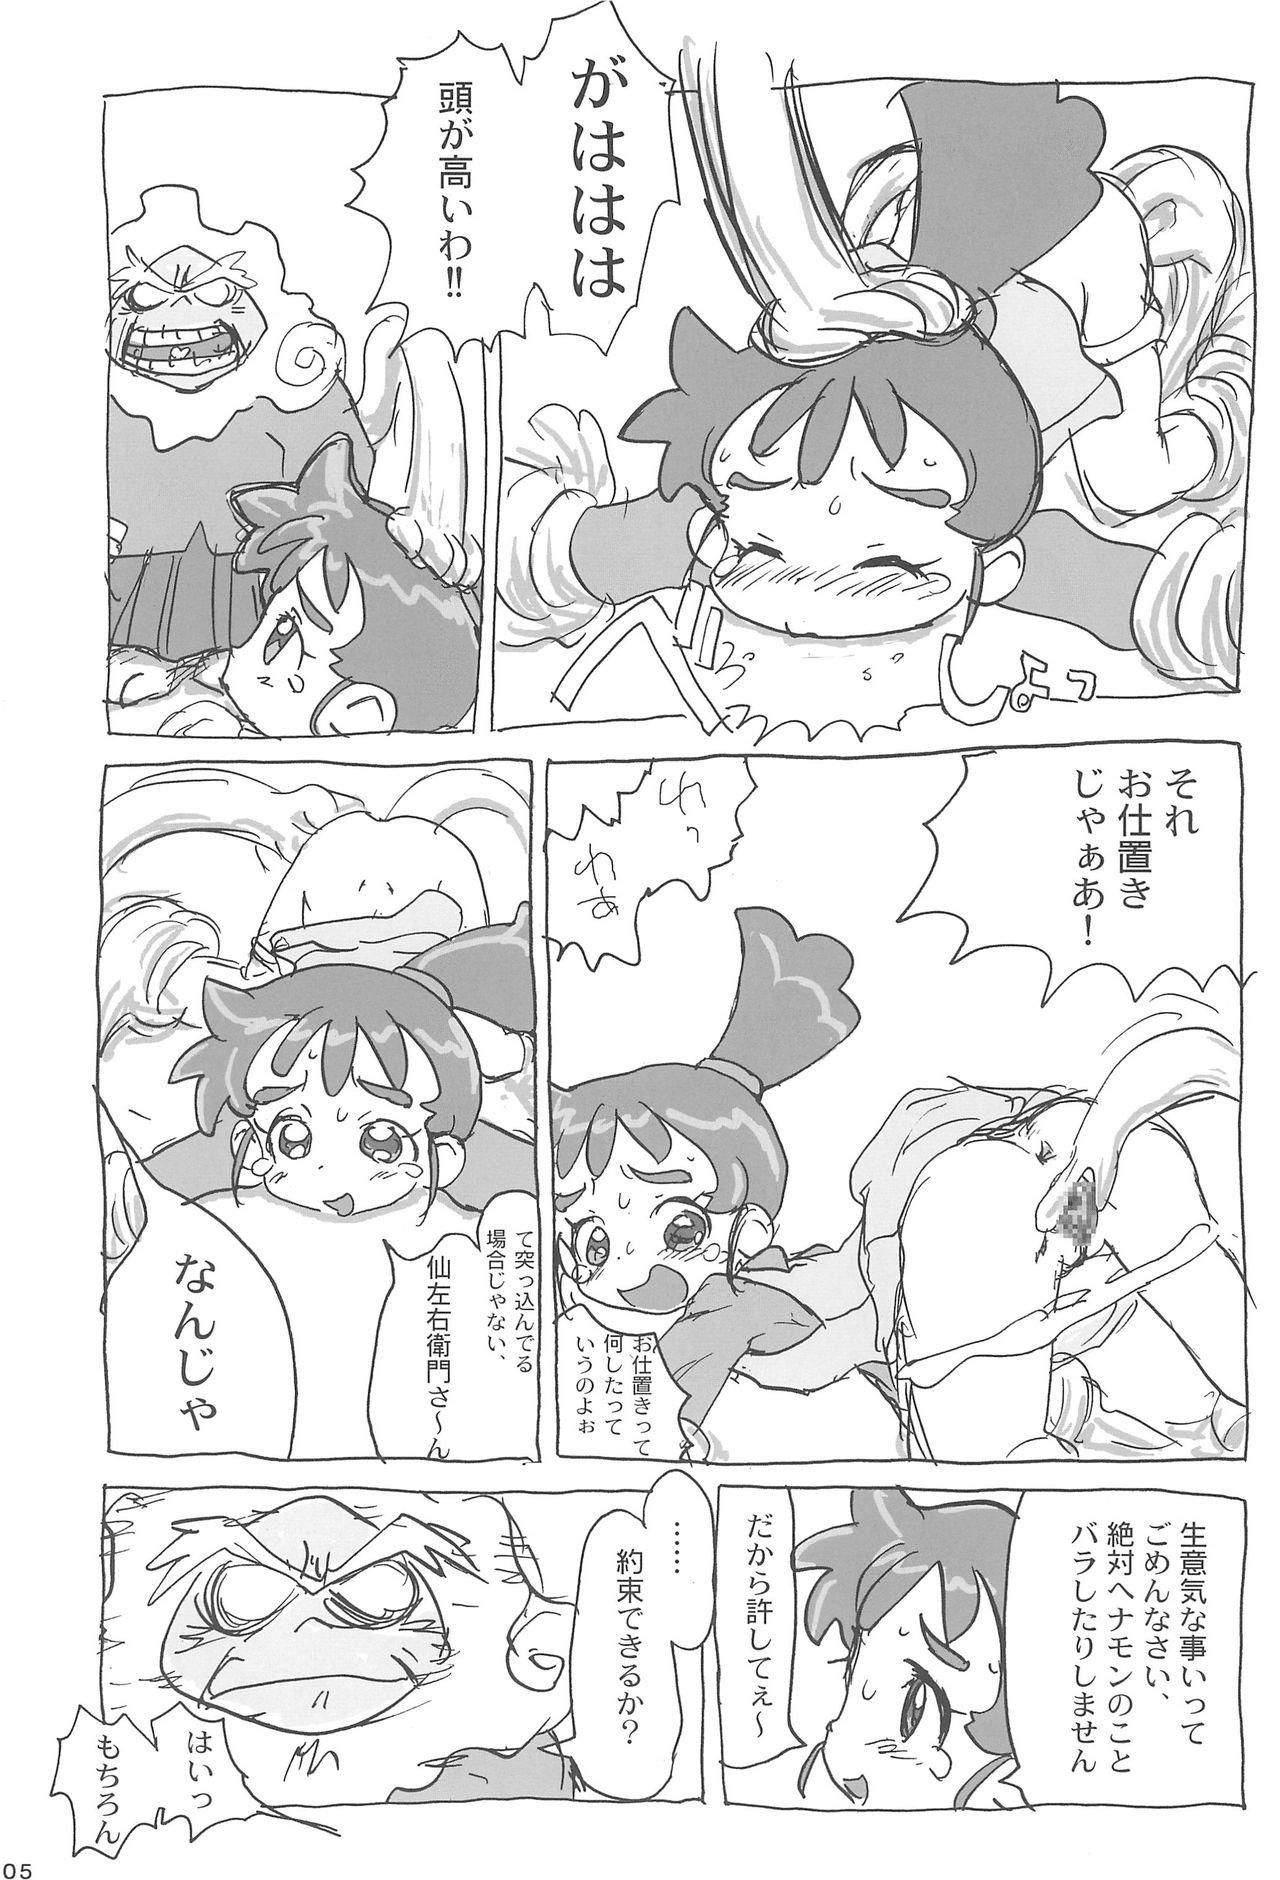 Tesao Ana no Hana - Kasumin Legs - Page 7